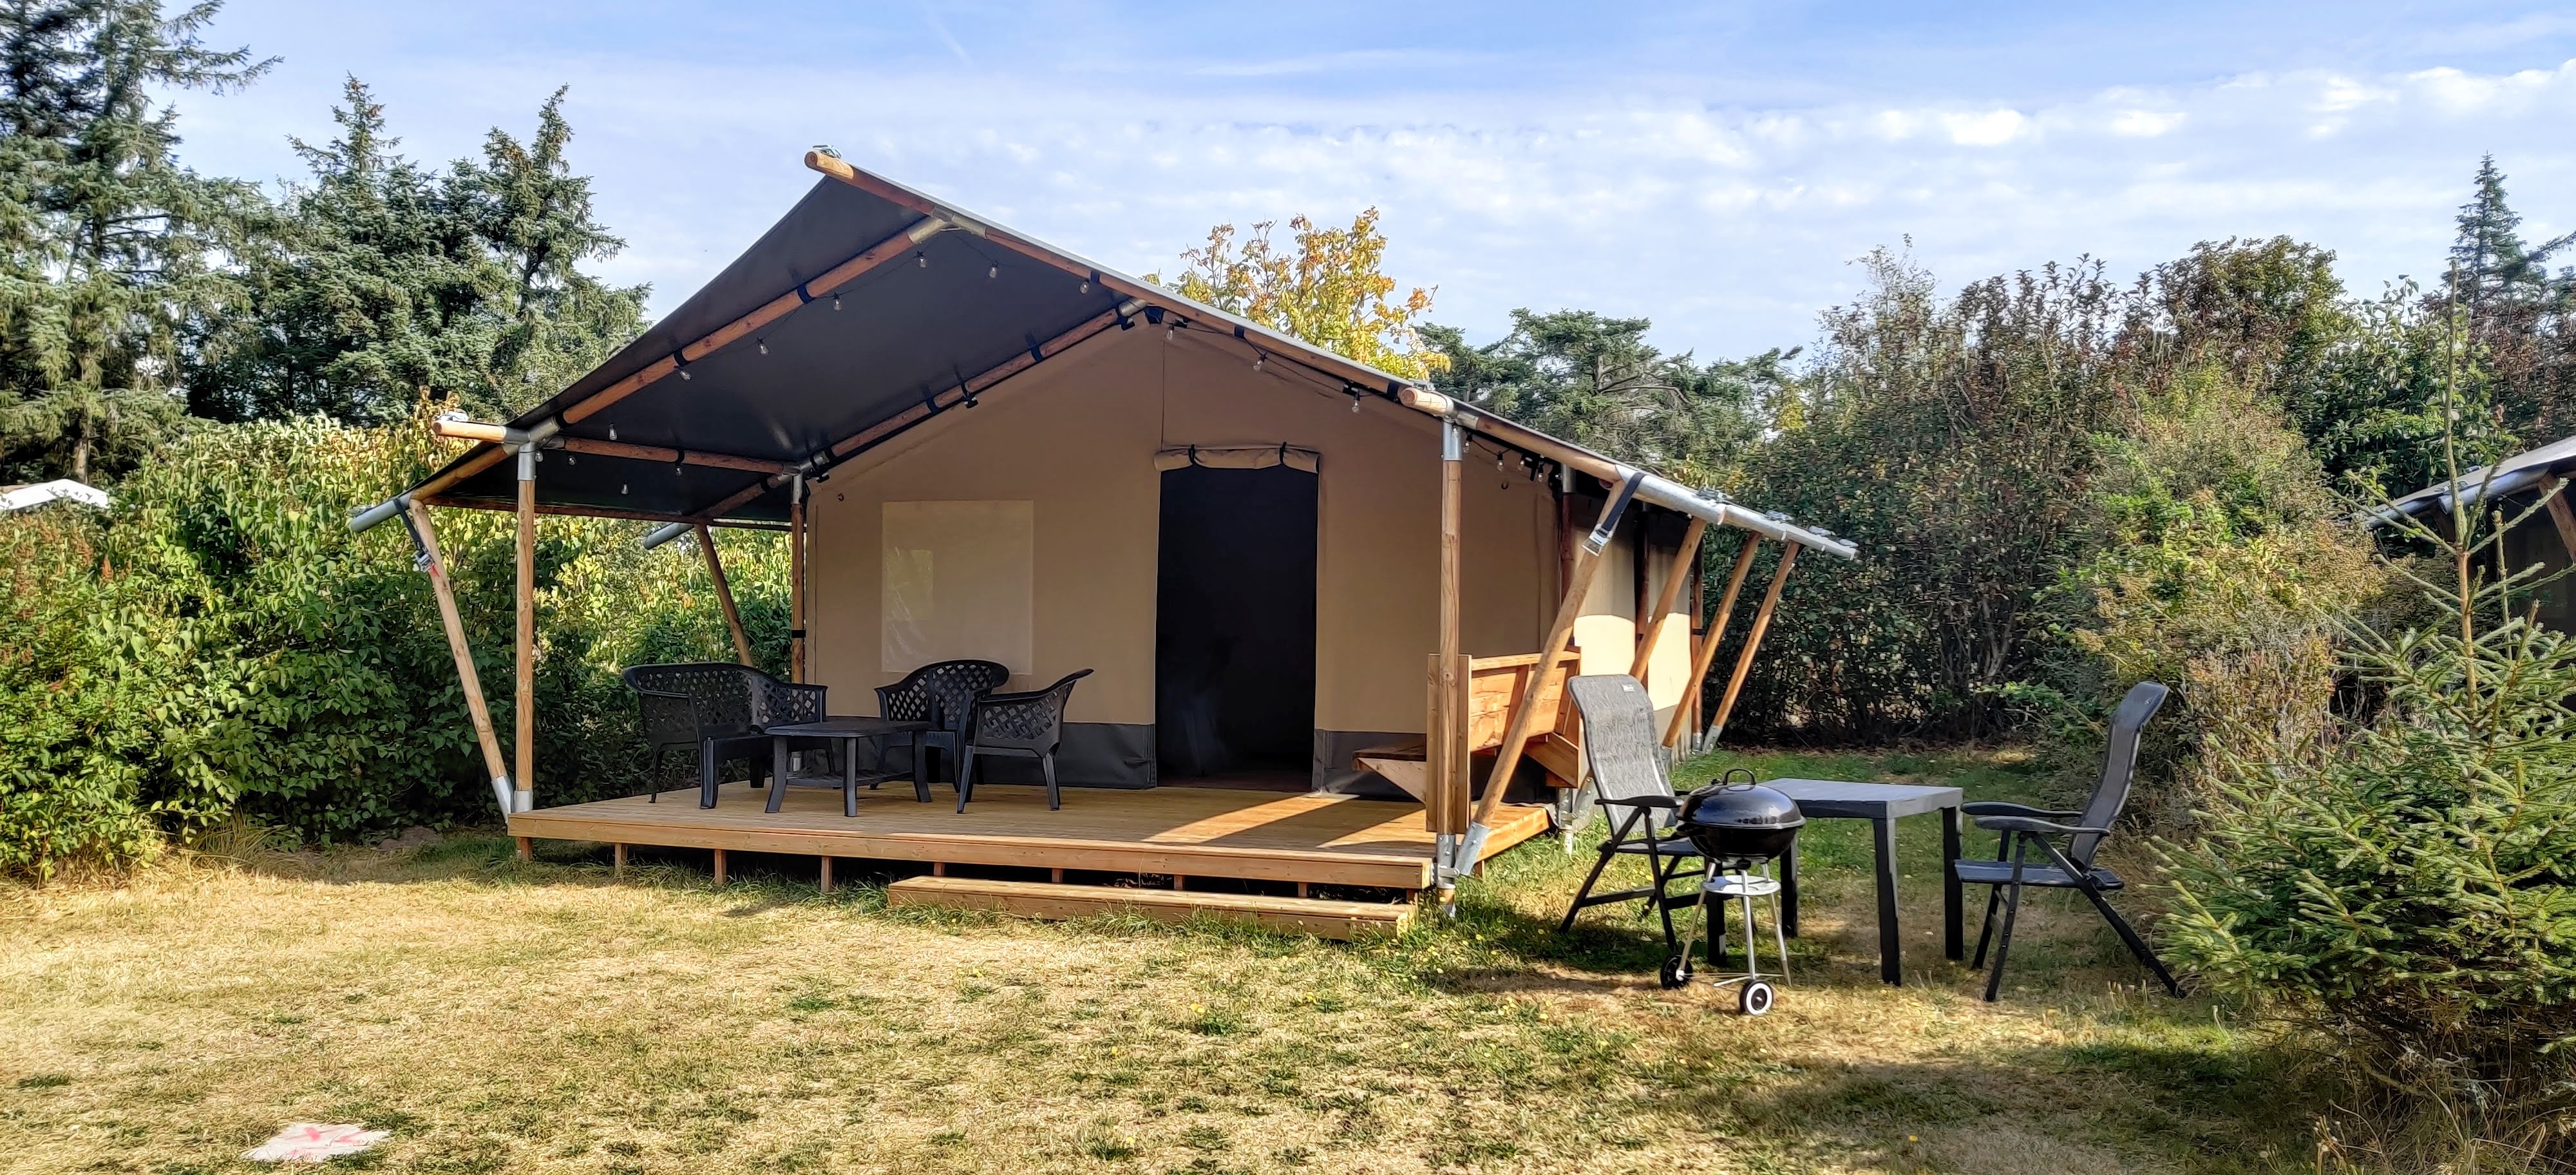 Ballum Camping - Safaritent 6 personen